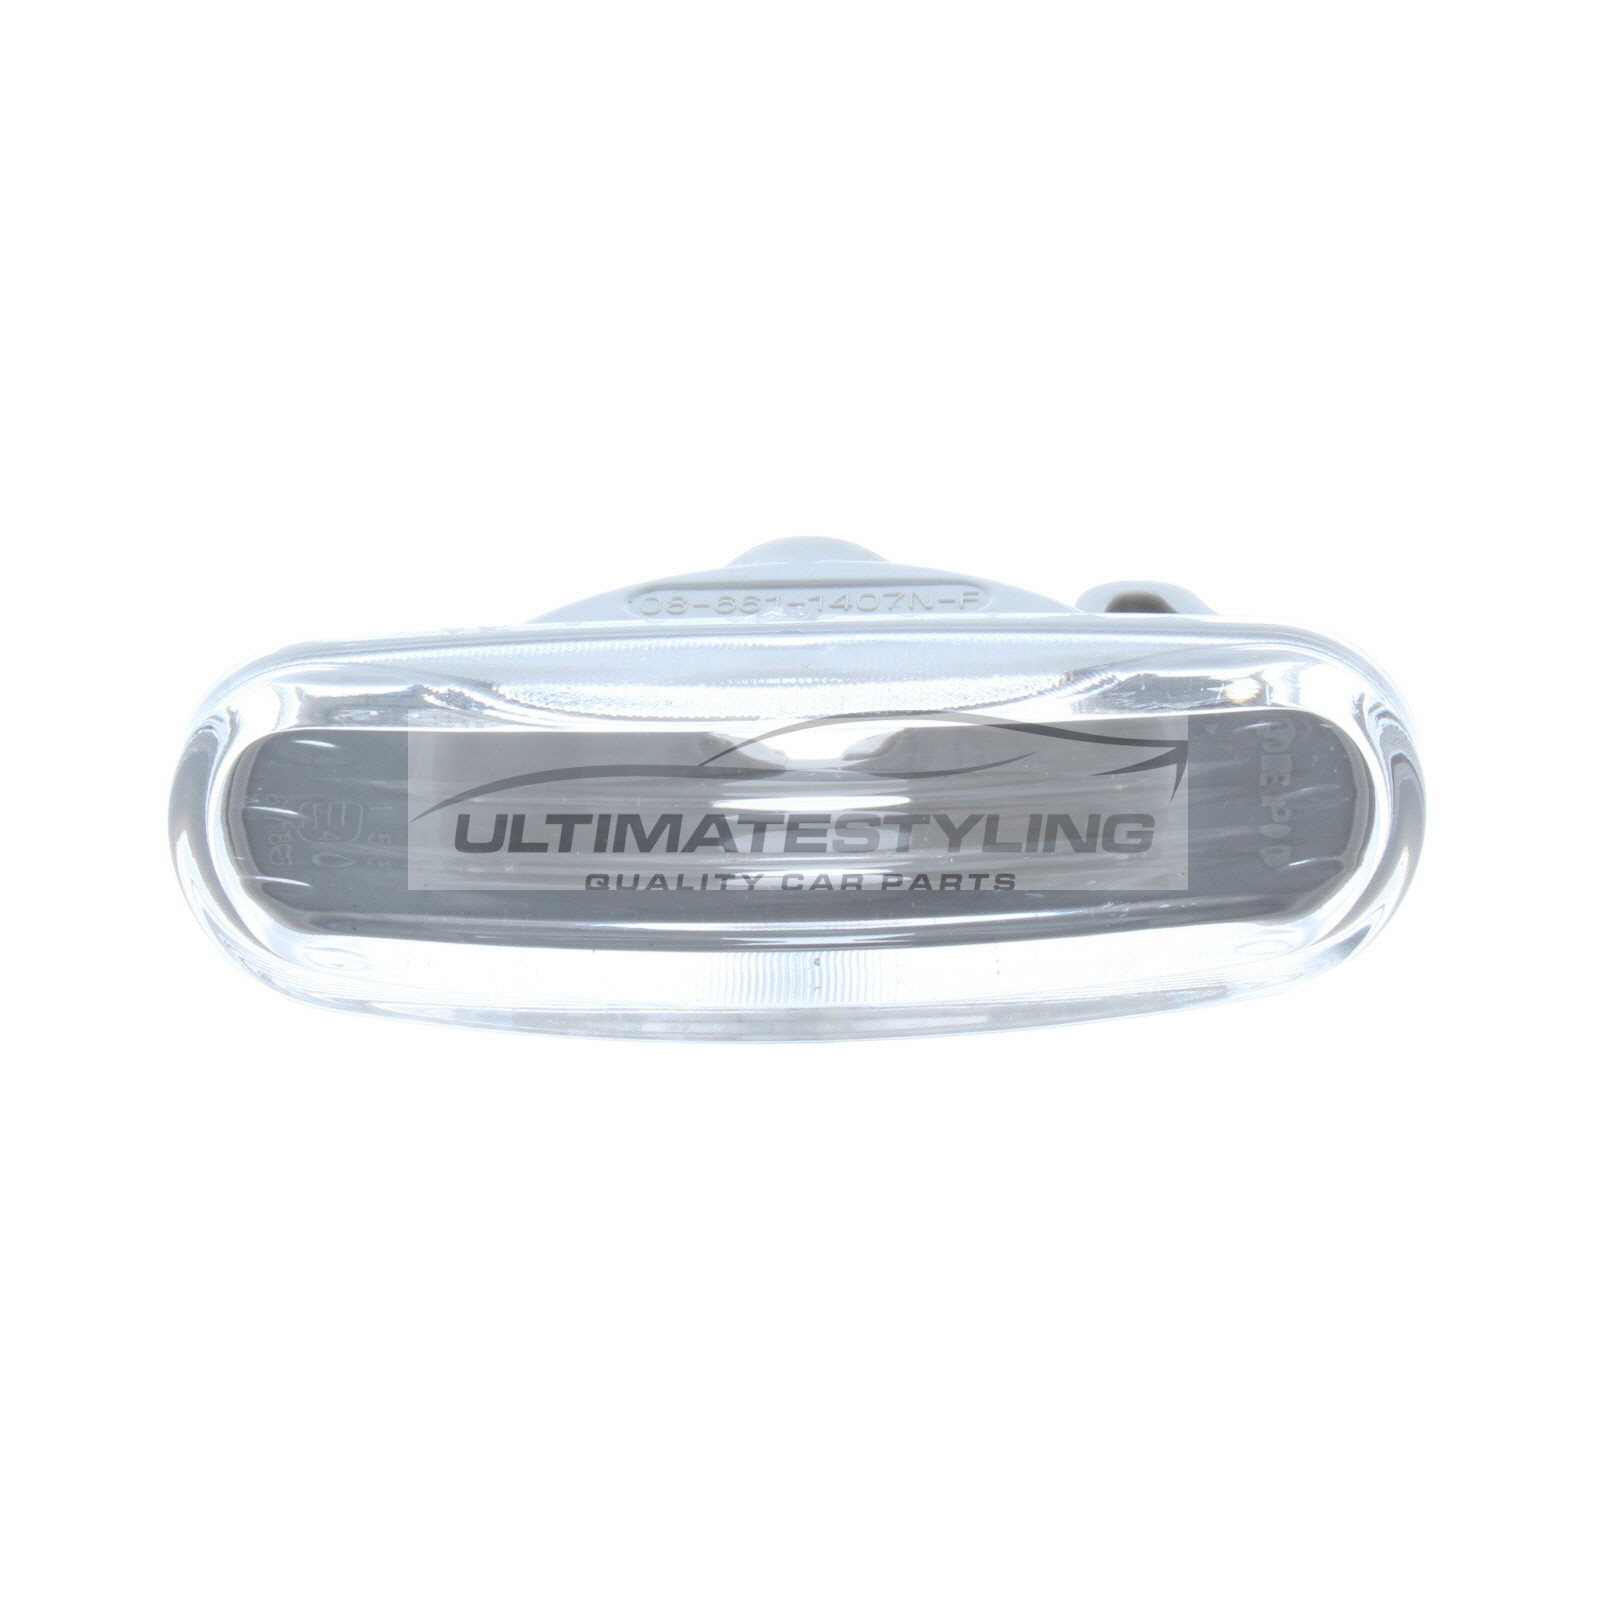 Citroen Nemo, Fiat Doblo / Fiorino / Grande Punto / Idea / Multipla / Panda / Punto / Punto Evo / Qubo / Stilo, Peugeot Bipper Side Repeater - Universal (LH or RH) - Clear lens - Non-LED